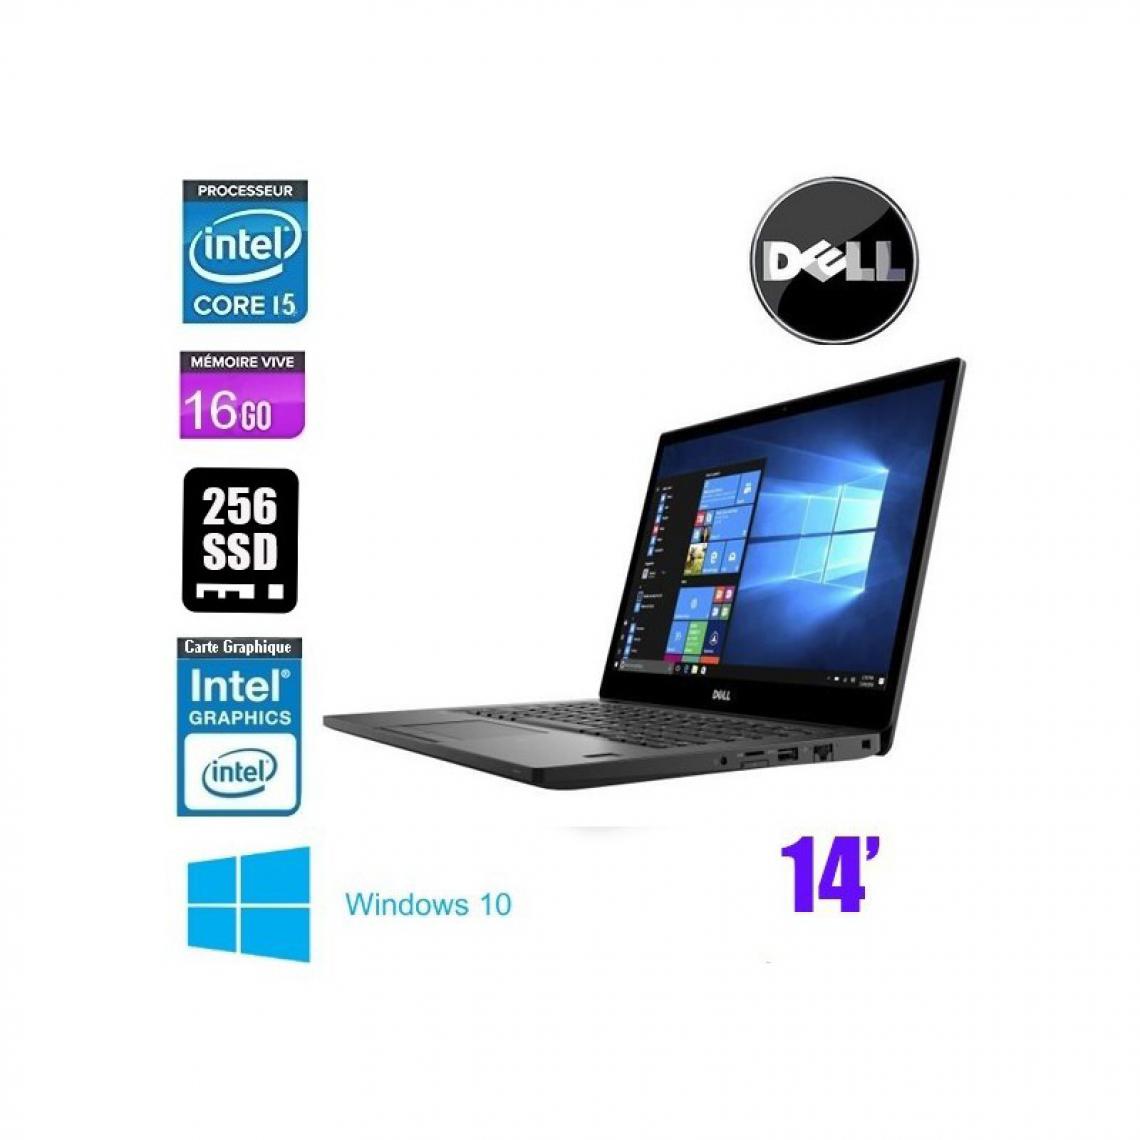 Dell - DELL LATITUDE E7480 CORE I5 7200U 2.5GHZ - PC Portable